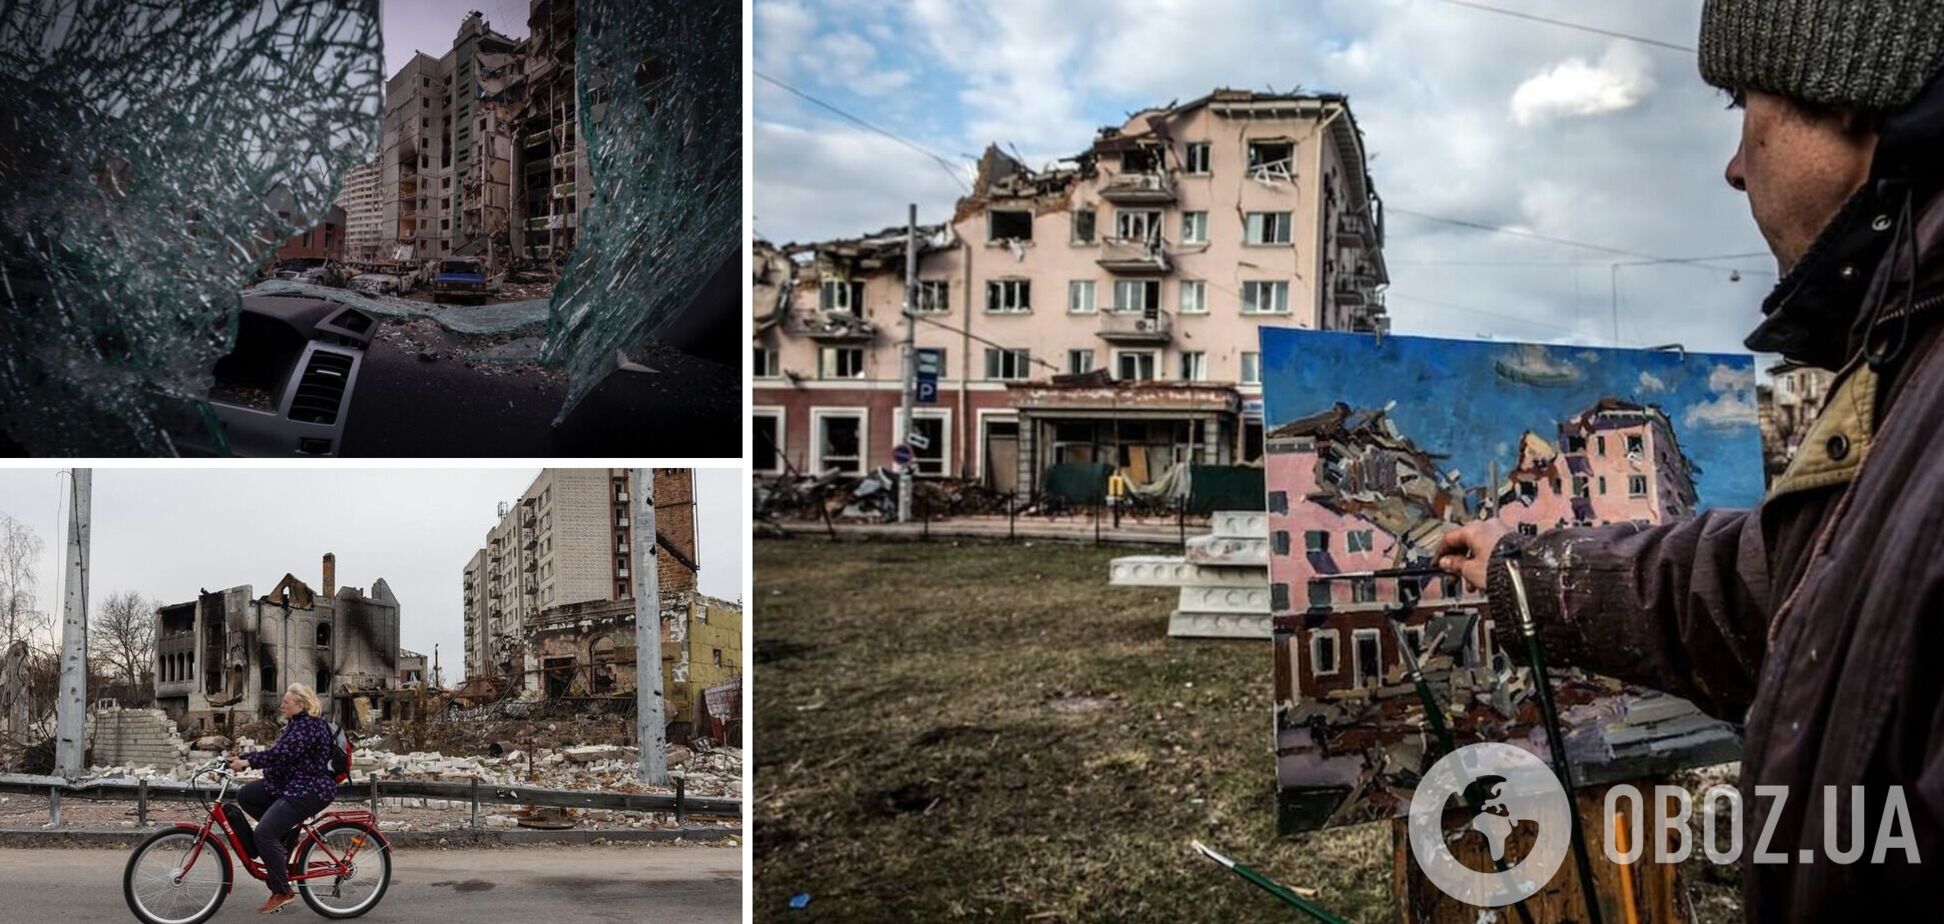 'Повсюду, где была оккупация, людей калечили и расстреливали': Зеленский напомнил о преступлениях захватчиков на Черниговщине. Фото